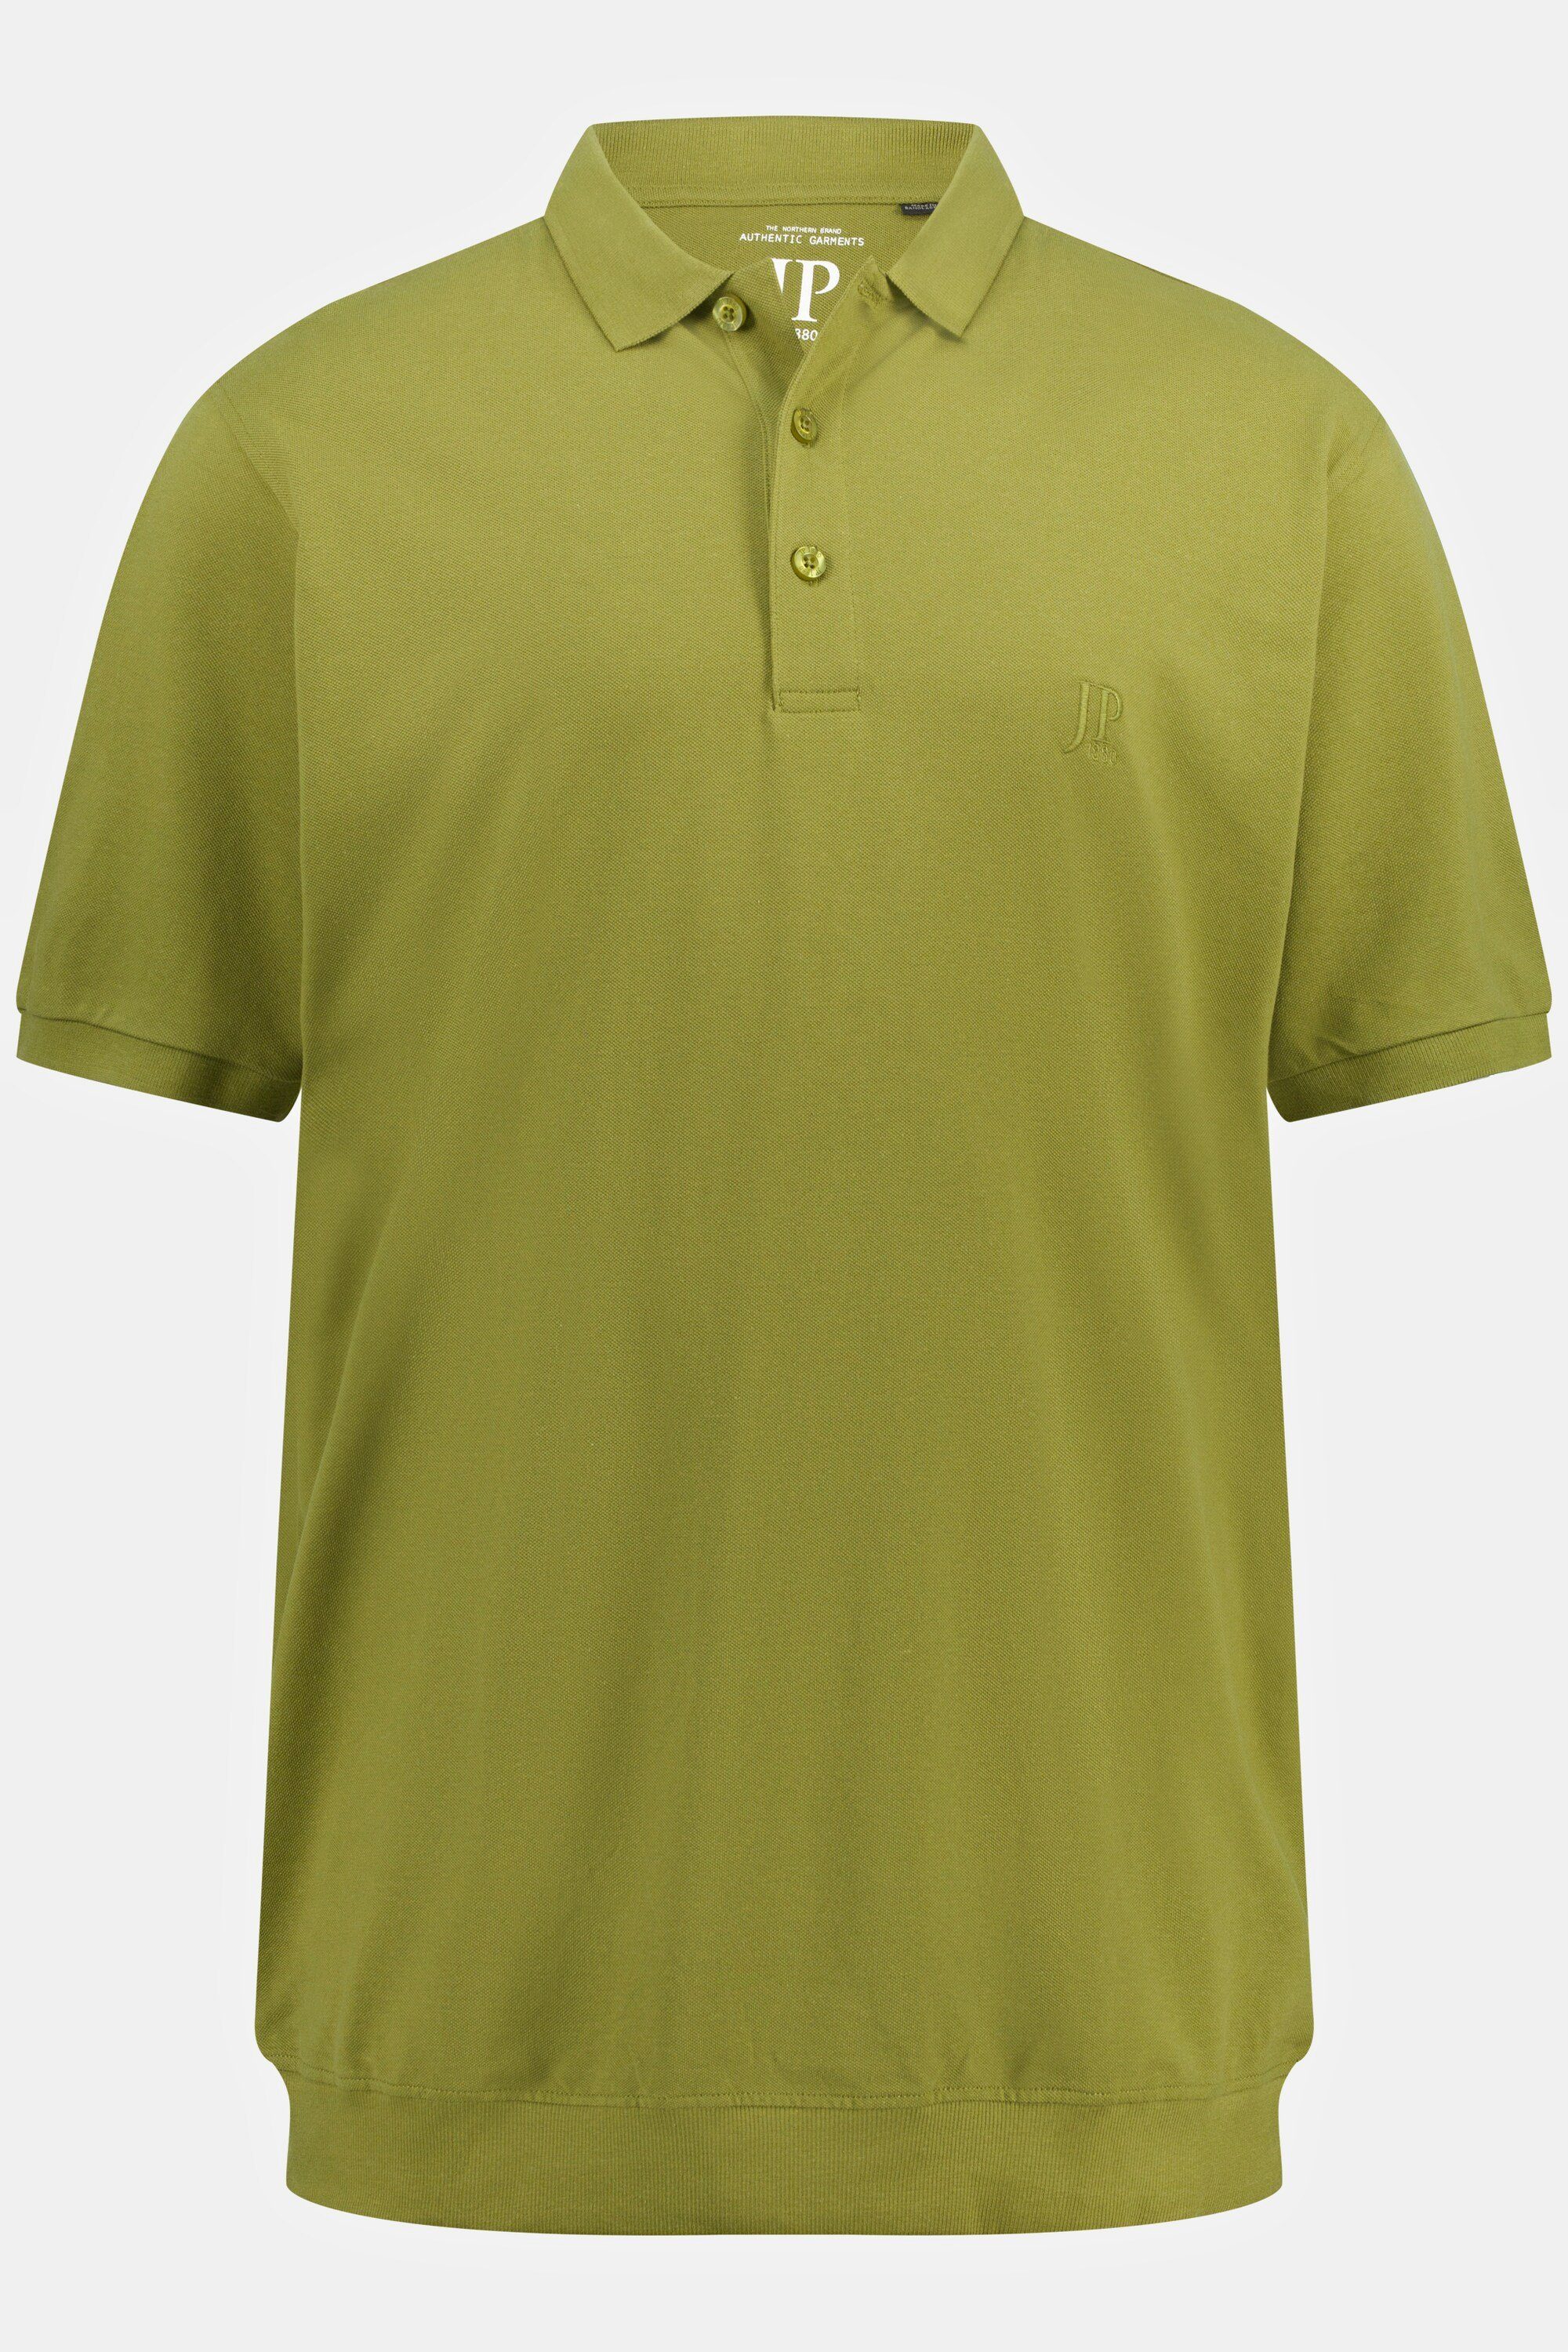 10XL Poloshirt Piqué Bauchfit XXL bis Basic moosgrün JP1880 Poloshirt